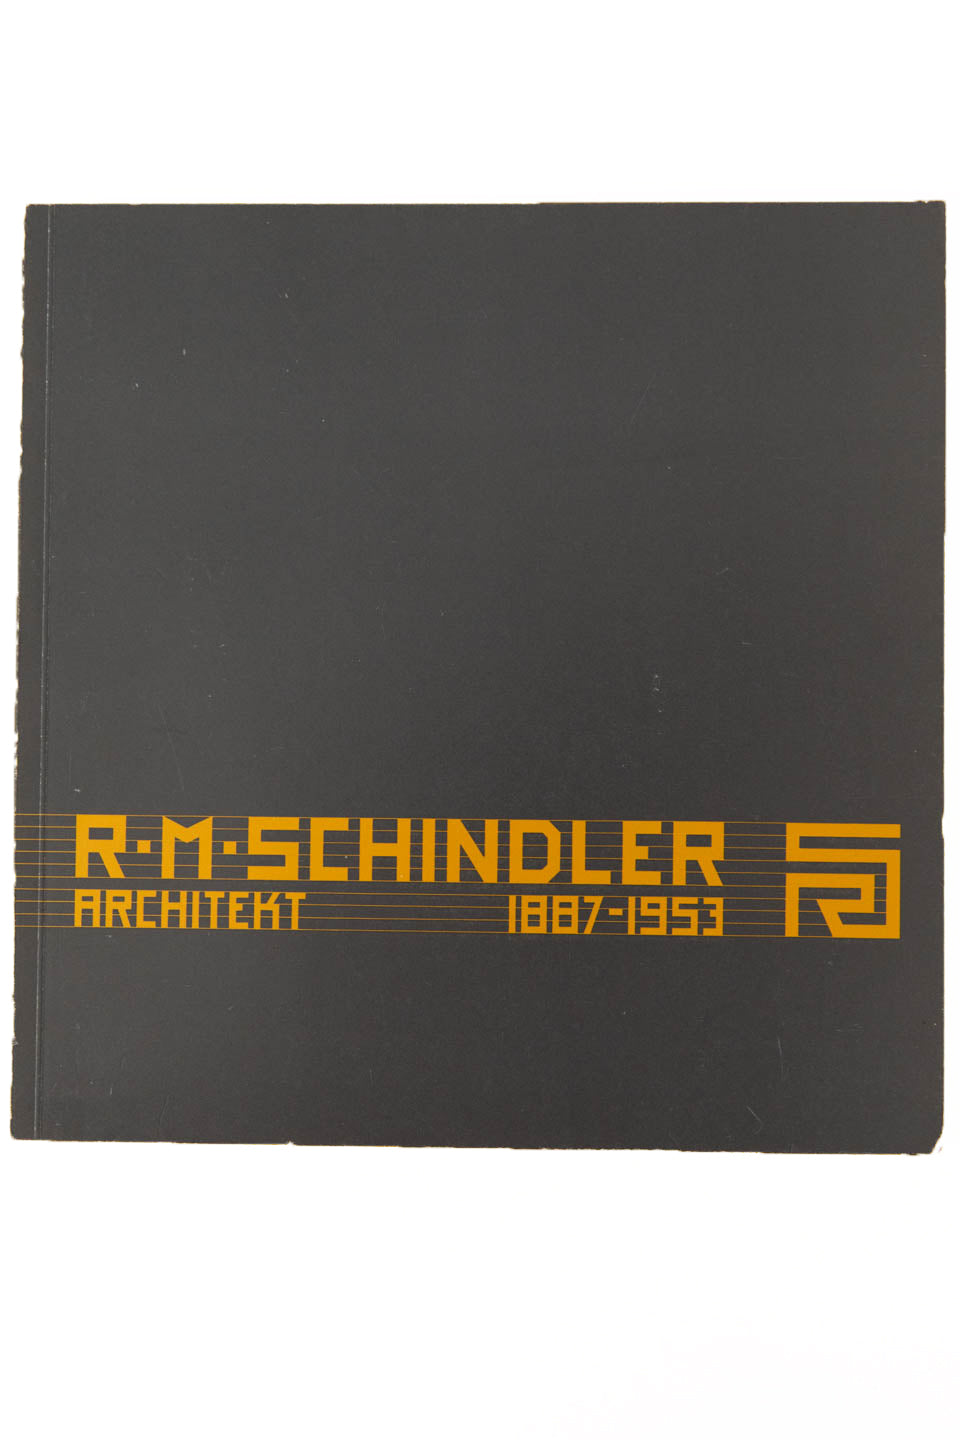 R.M. SCHINDLER | Architekt 1887-1953